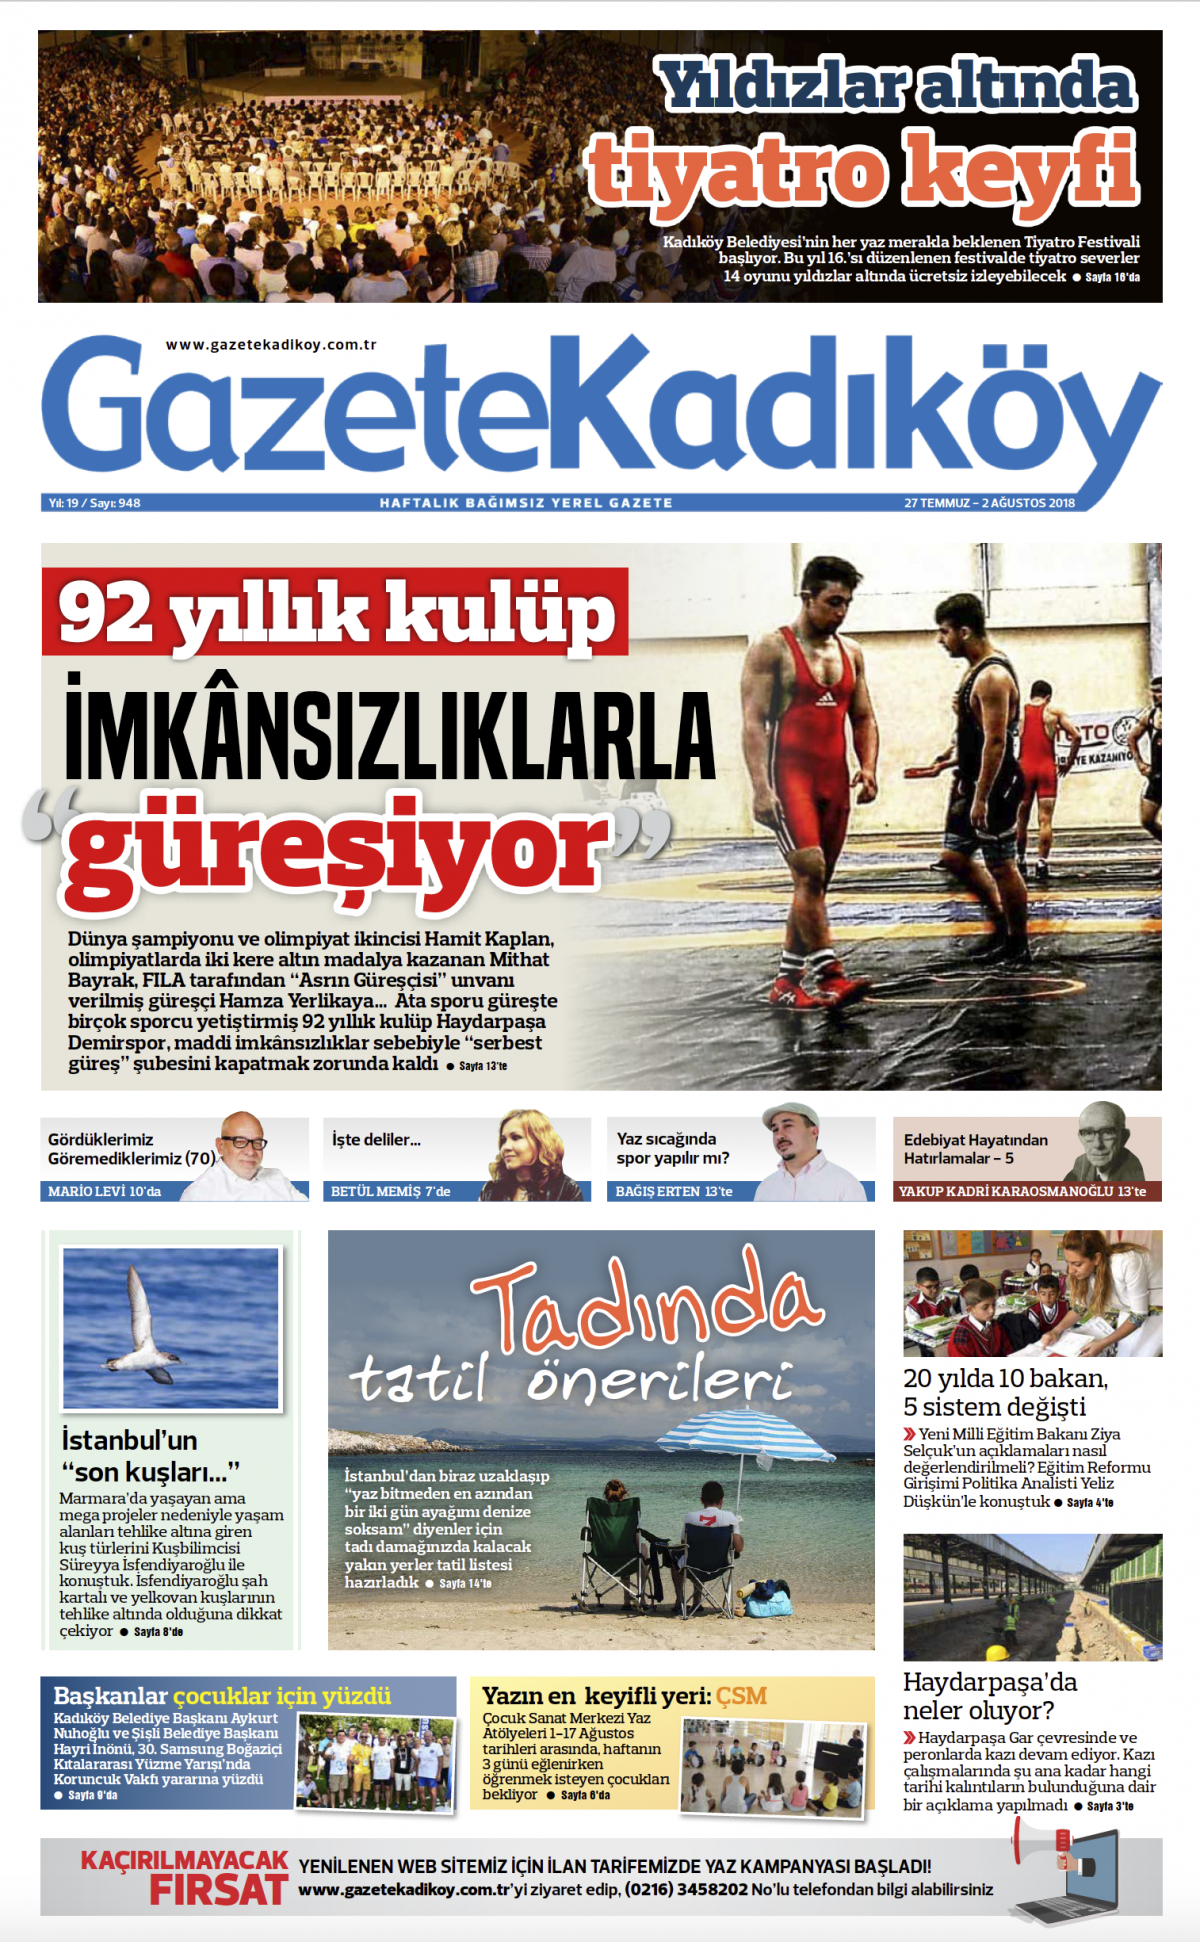 Gazete Kadıköy - 948. SAYI